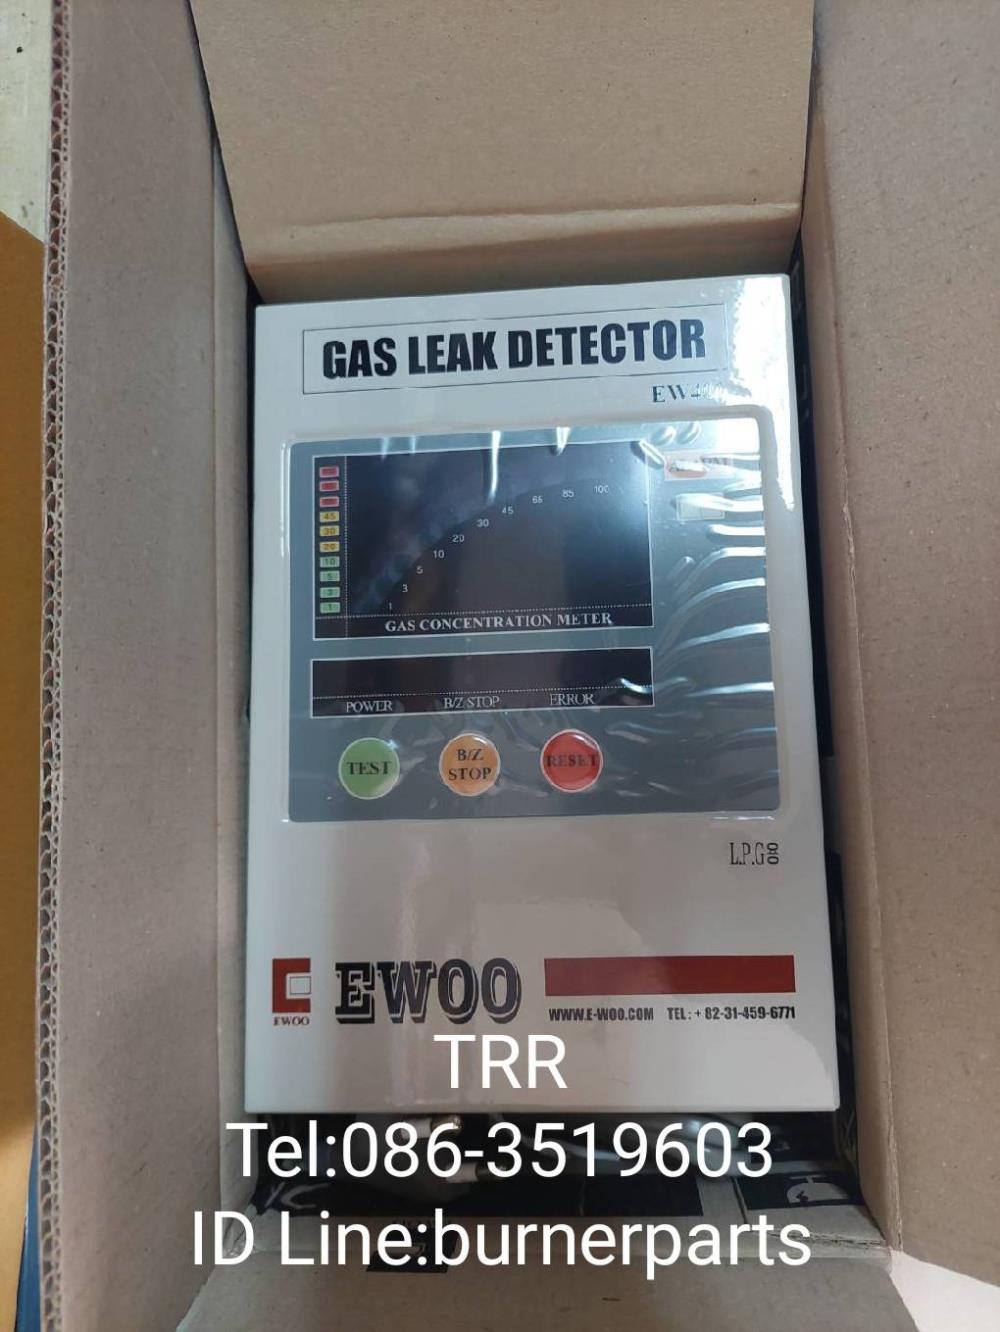 EW401 Gas Leak Detector "EWOO",EW401 Gas Leak Detector "EWOO",EW401 Gas Leak Detector "EWOO",Instruments and Controls/Detectors